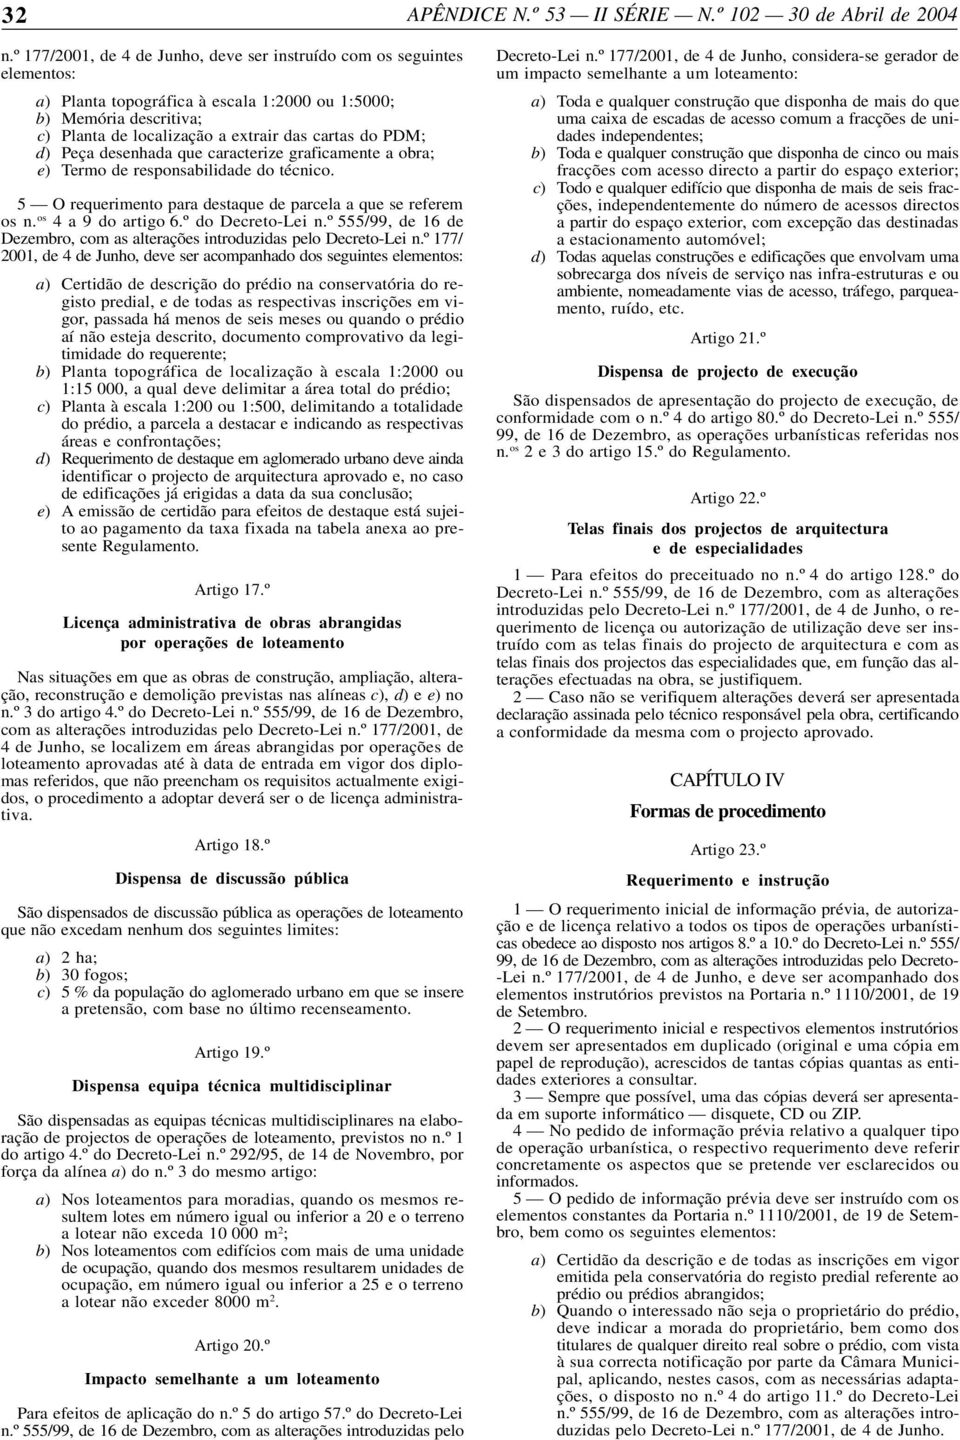 º do Decreto-Lei n.º 555/99, de 16 de Dezembro, com as alterações introduzidas pelo Decreto-Lei n.